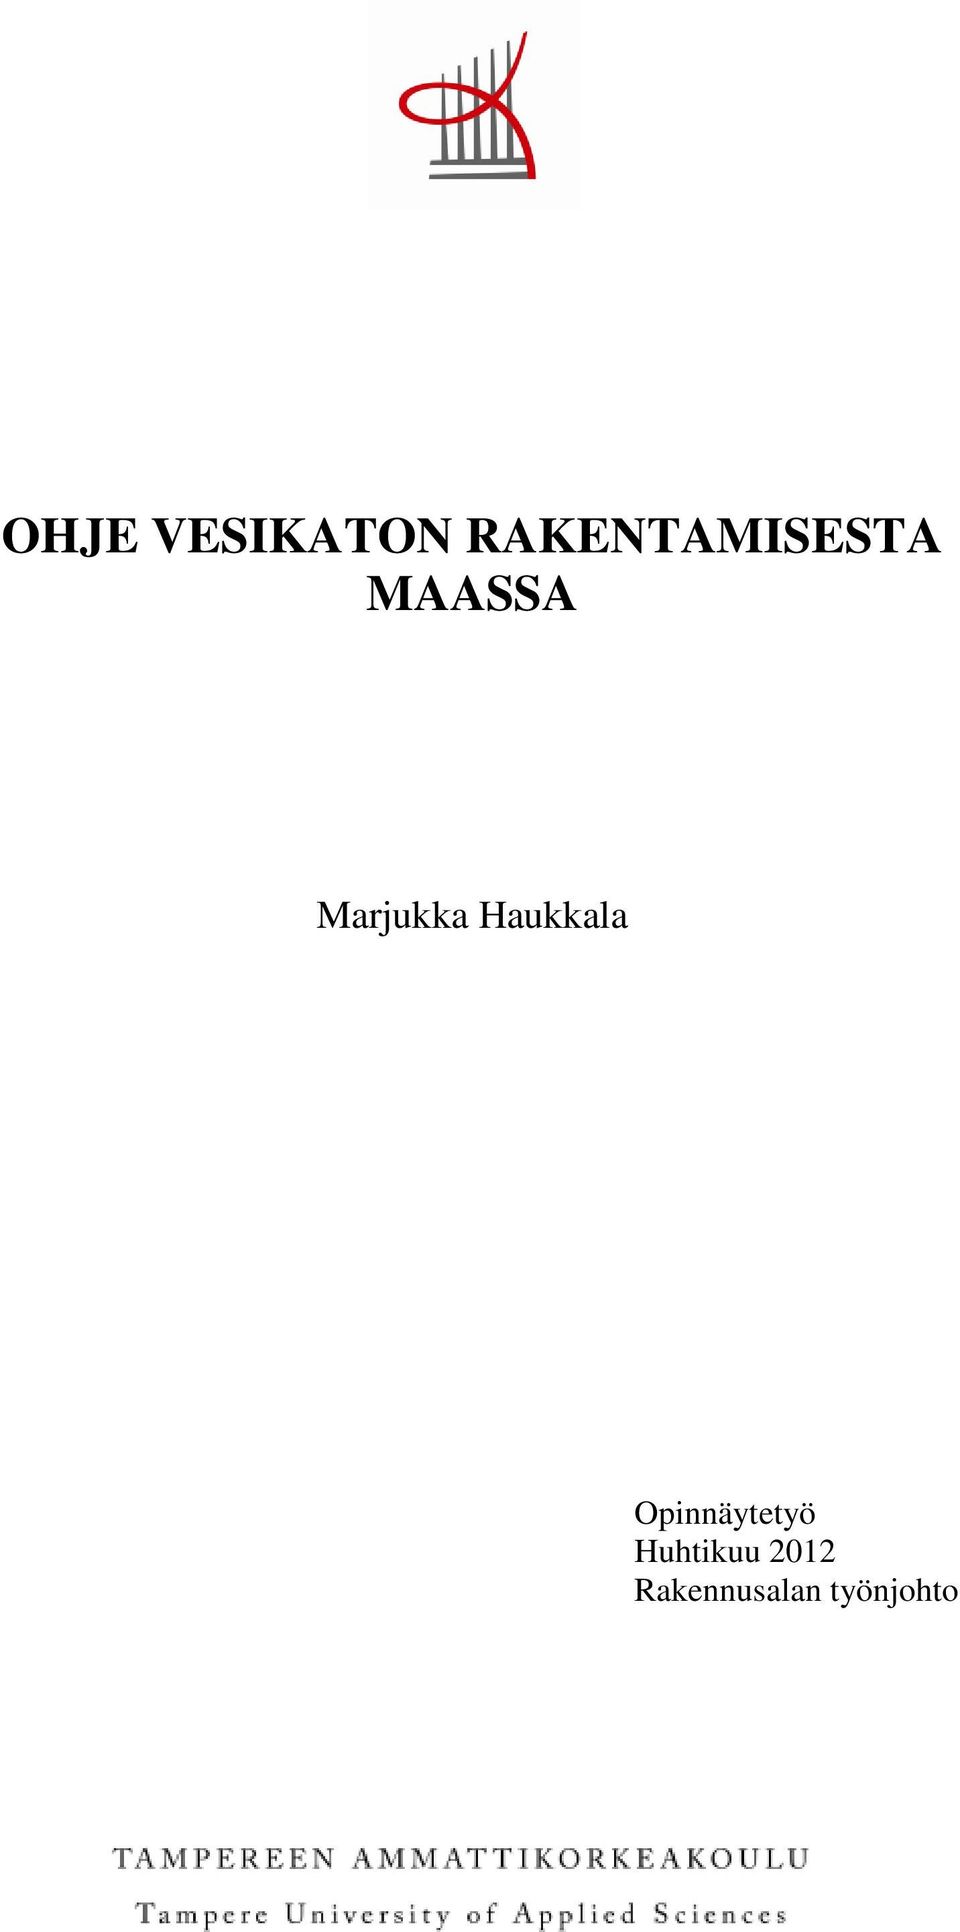 Marjukka Haukkala